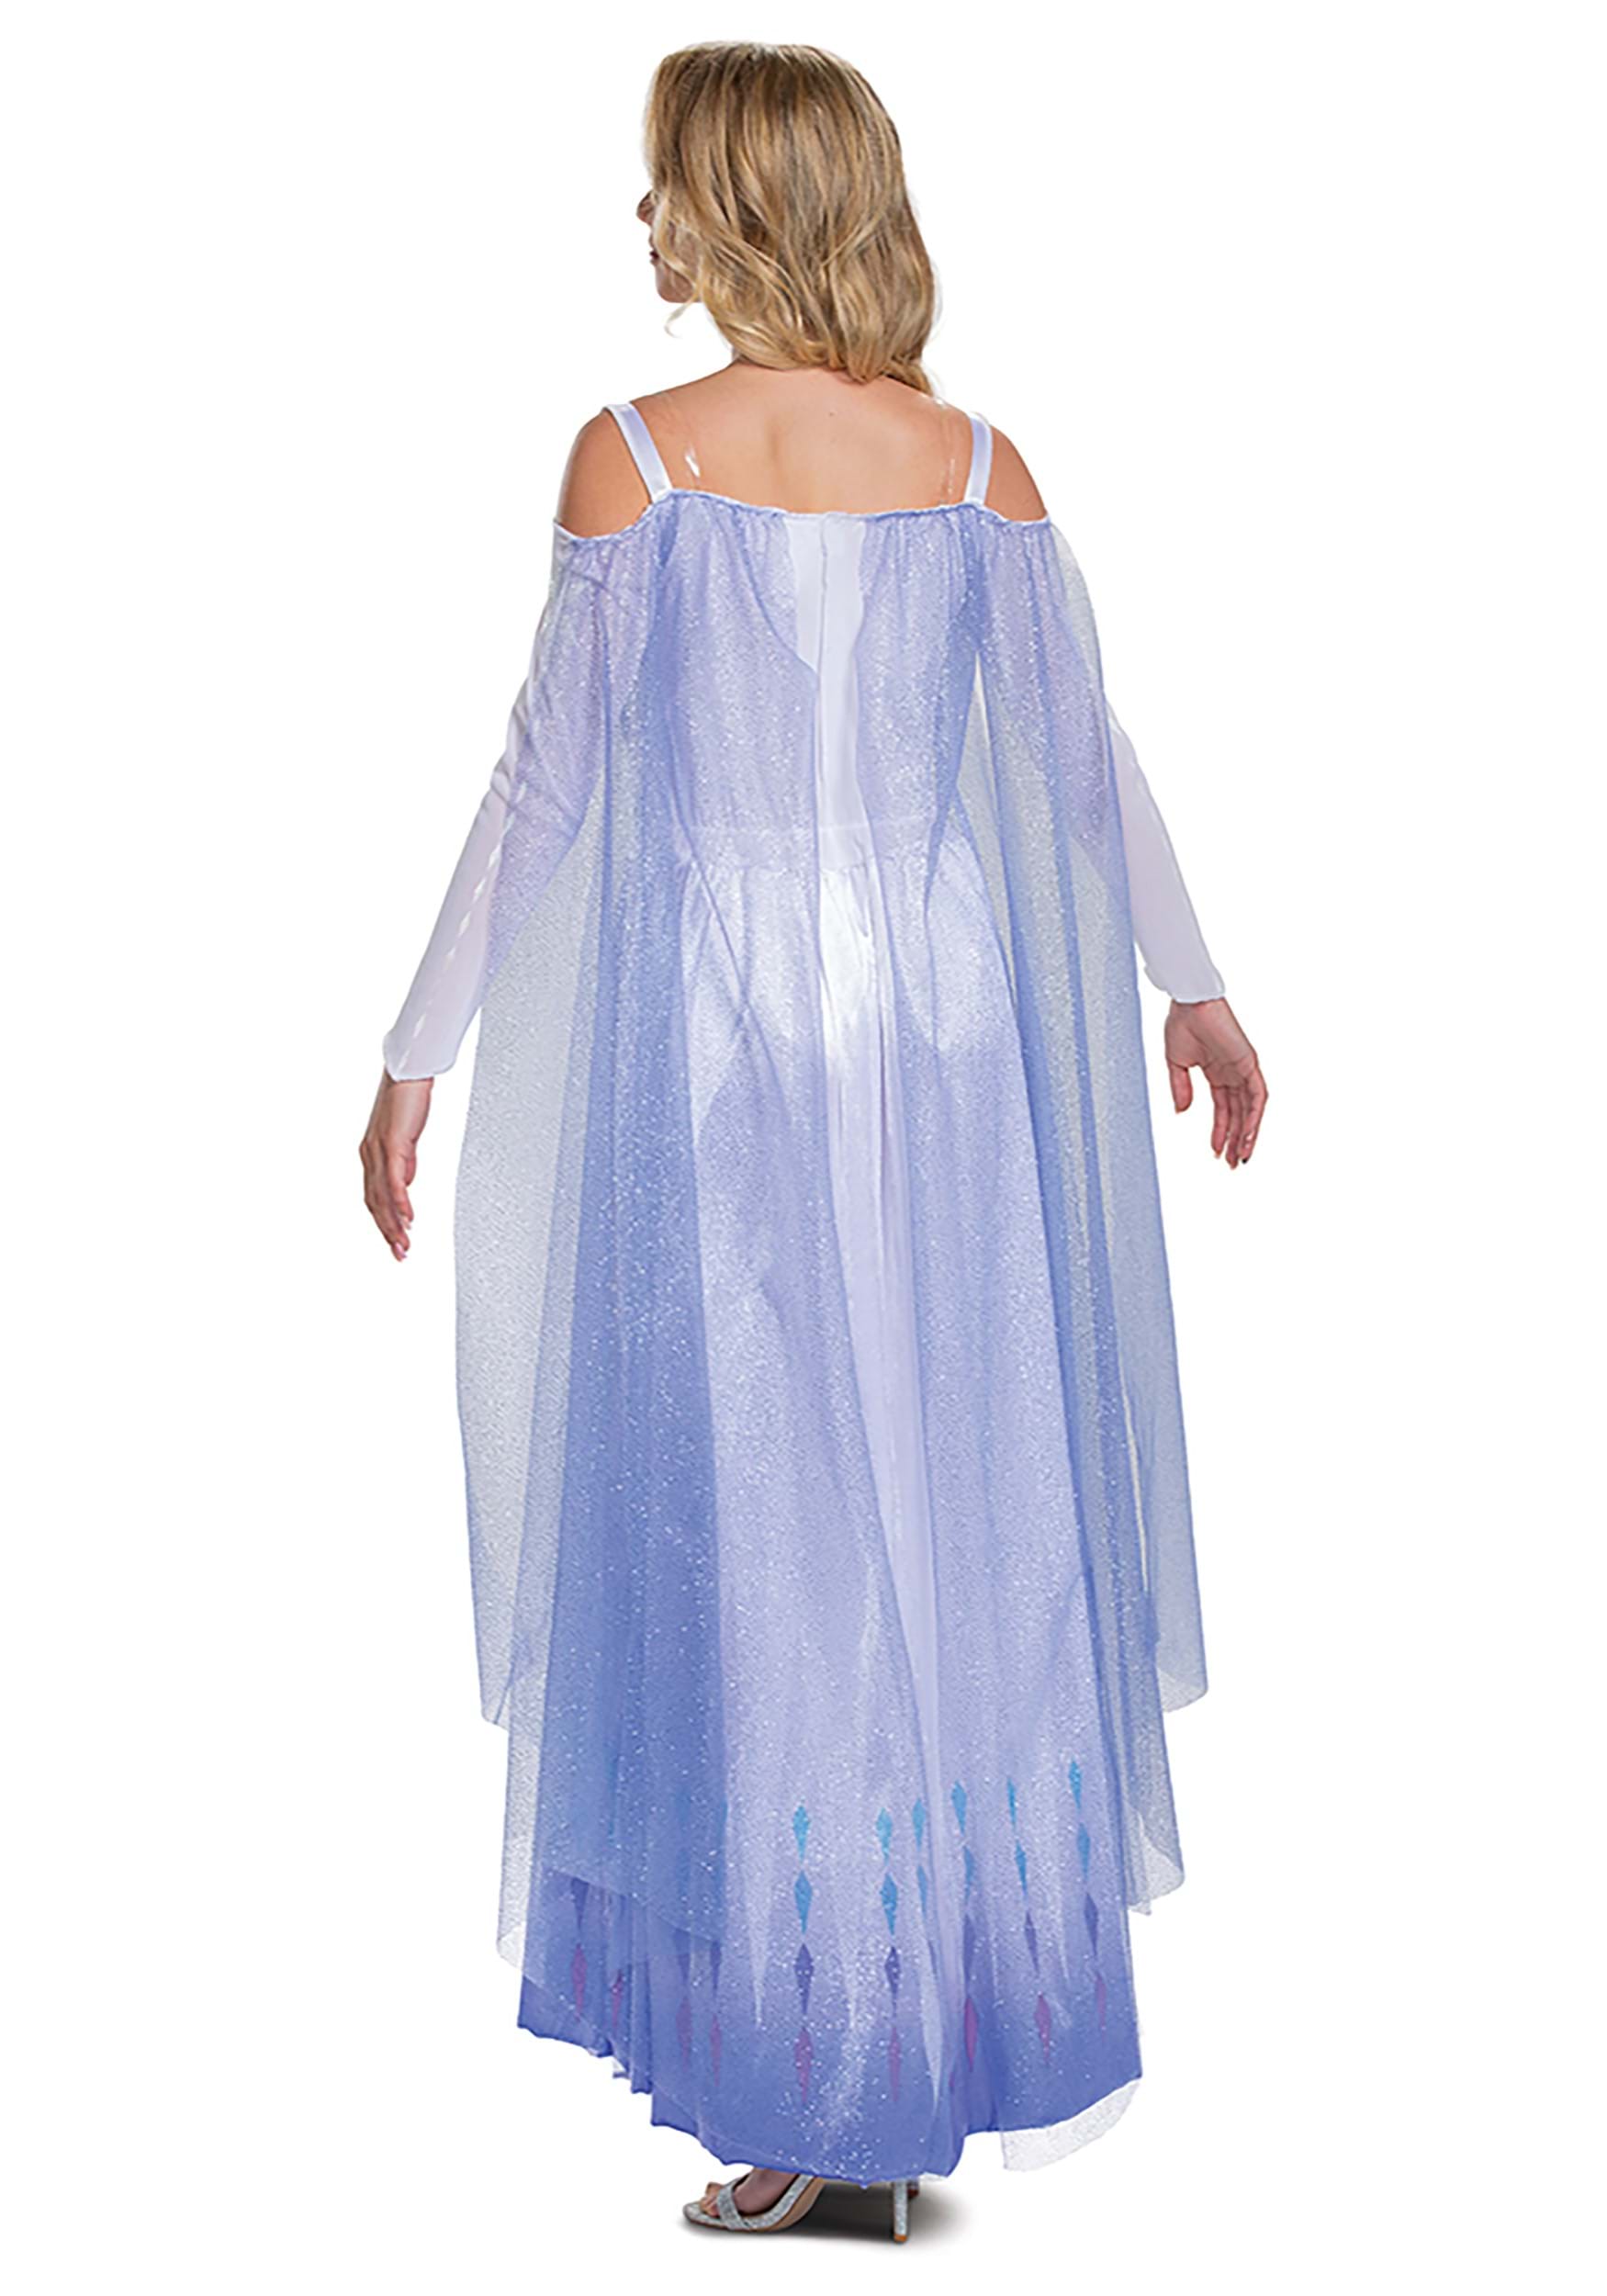 Women's Frozen Snow Queen Elsa Deluxe Fancy Dress Costume